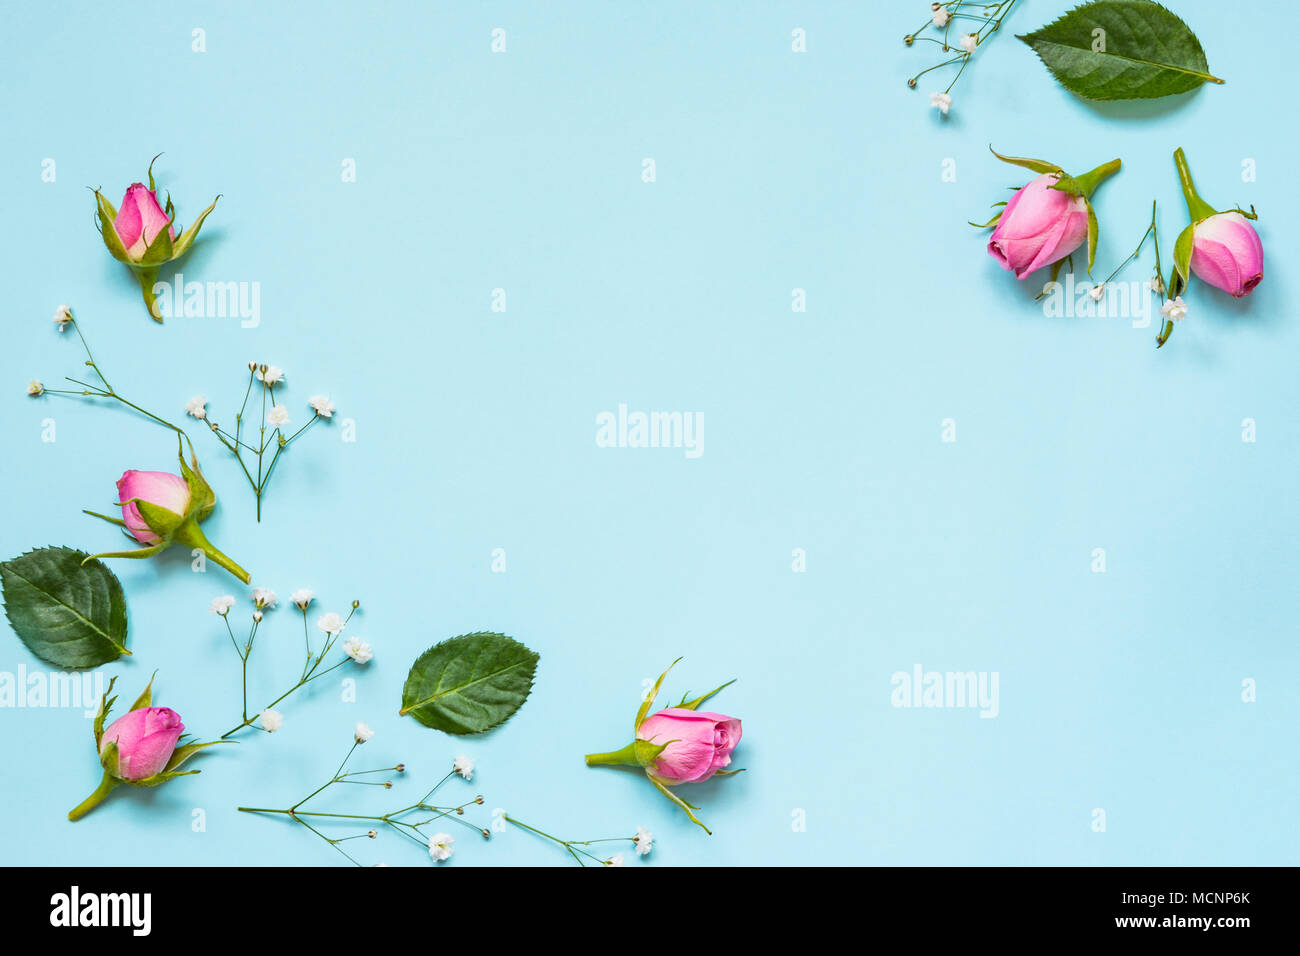 Vue de dessus de roses roses et de feuilles vertes sur fond bleu. Abstract floral background. Copier l'espace. Banque D'Images